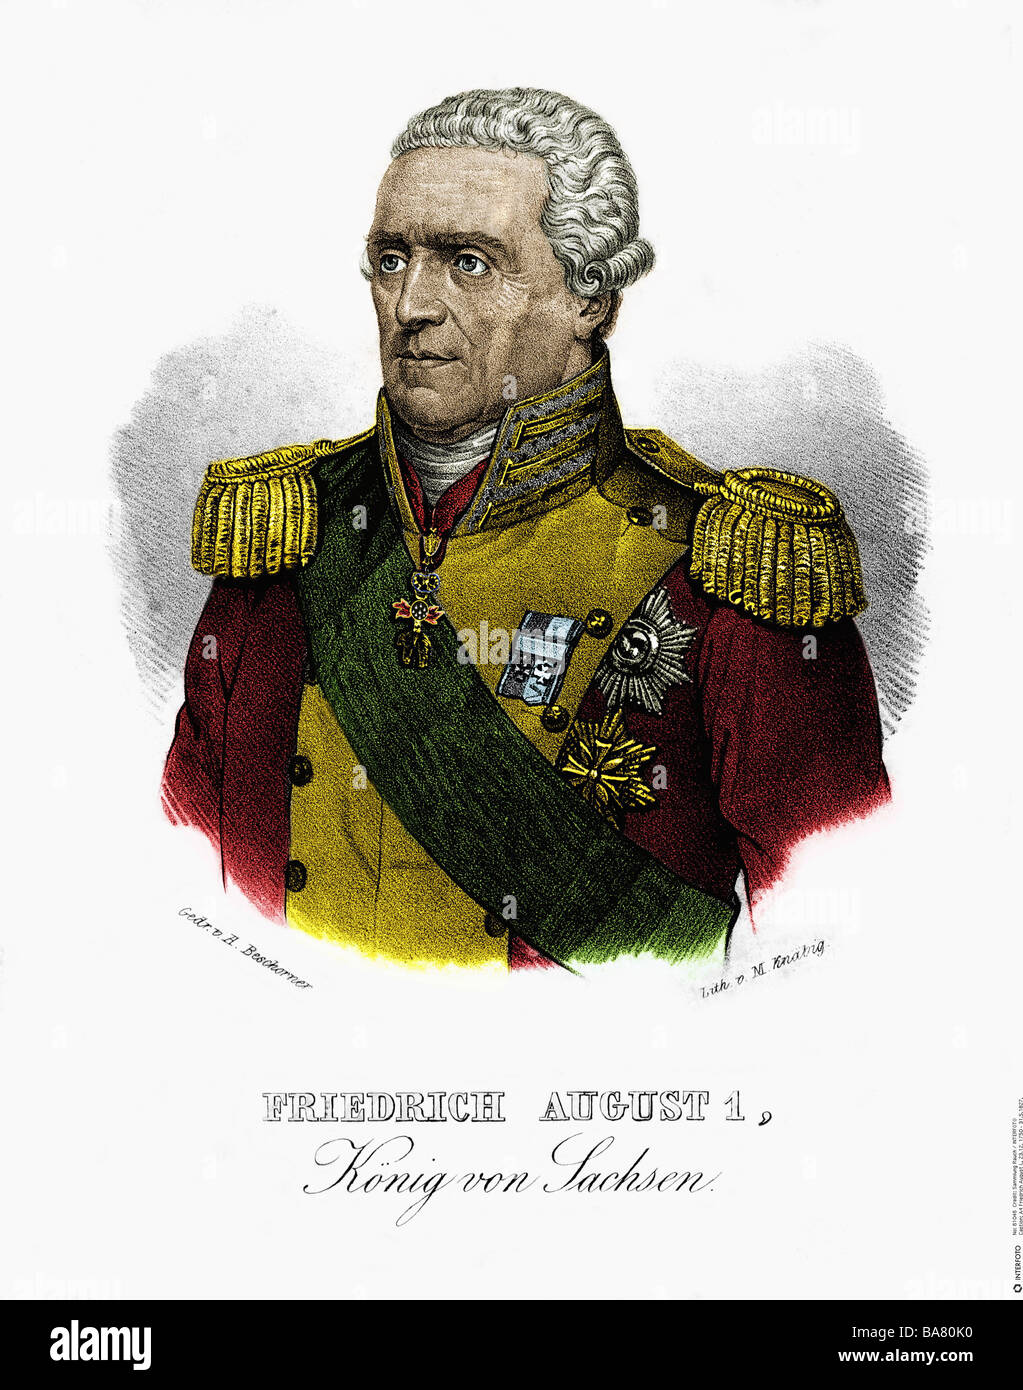 Federico Augusto i, 23.12.1750 - 31.5.1827, Re di Sassonia 11.12.1806 - 31.5.1827, ritratto, litografia, di M. Knaebig, inizio 19th secolo, successivamente colorato, Foto Stock